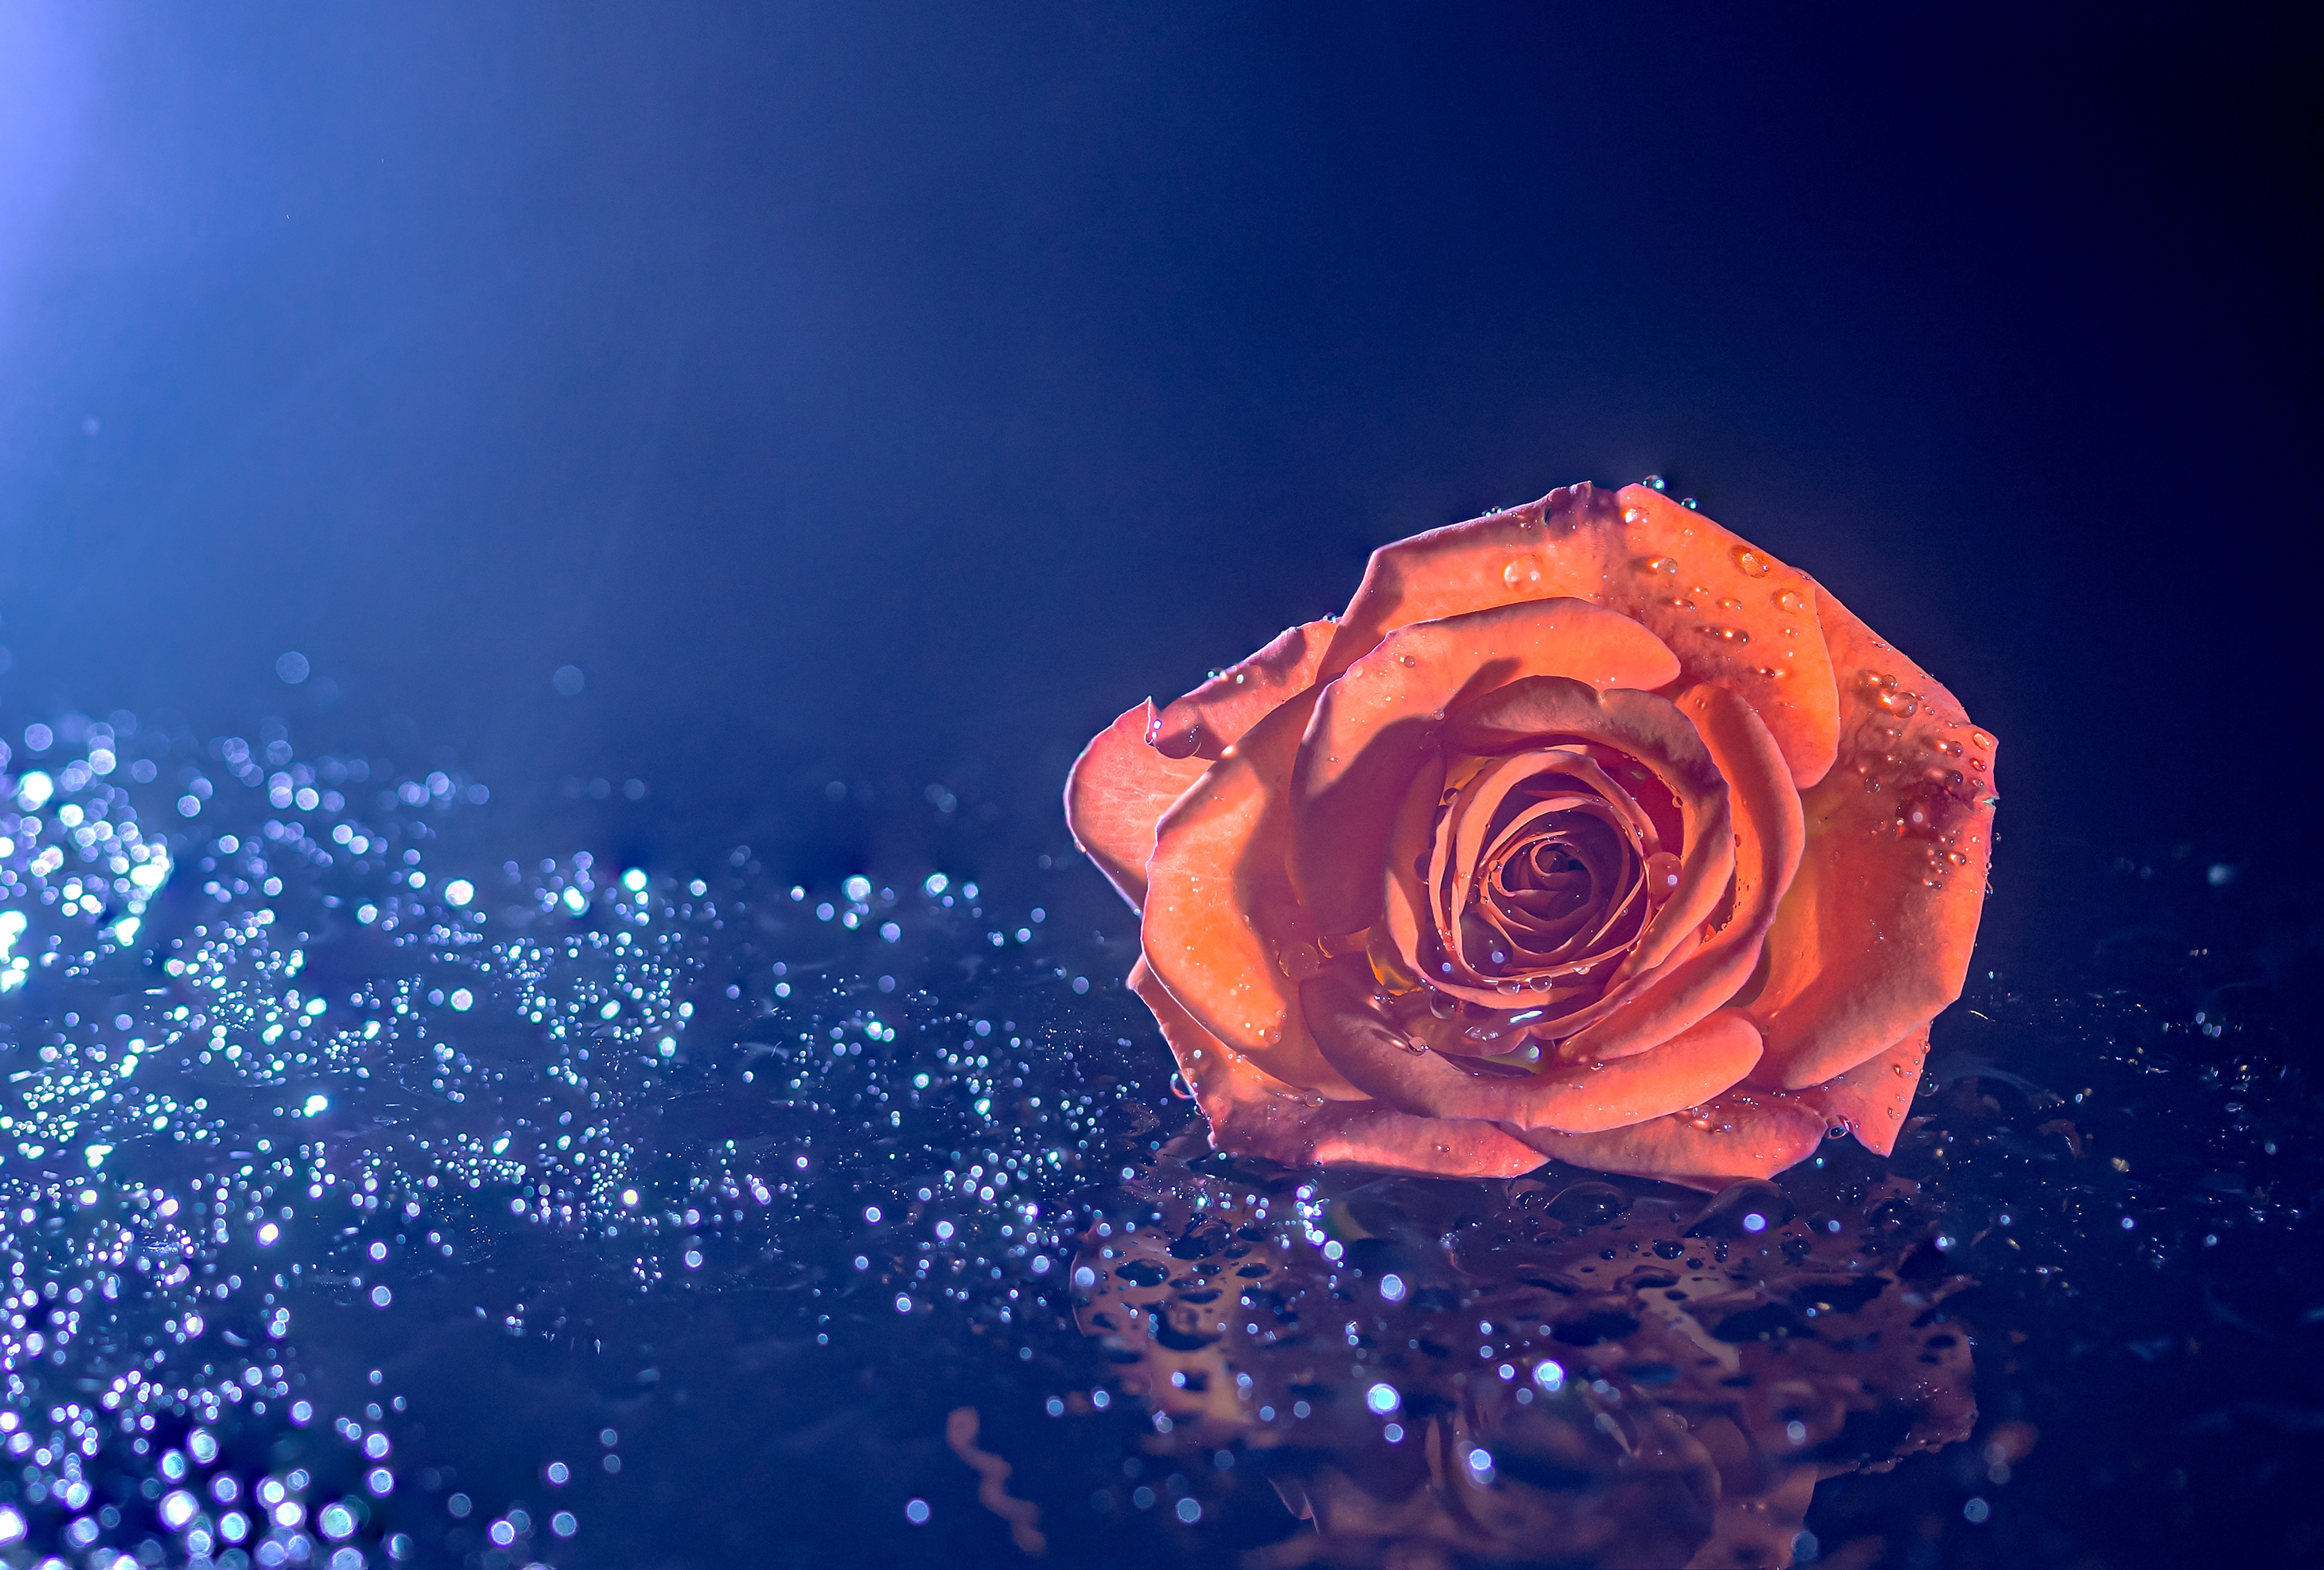 Hoa hồng cam đích thực là một tác phẩm nghệ thuật được tạo ra bởi sự kết hợp giữa sắc cam rực rỡ và vẻ đẹp thơm ngát của những cánh hoa hồng. Hãy đắm chìm trong vẻ đẹp tuyệt vời này qua bức hình mà chúng tôi cung cấp.